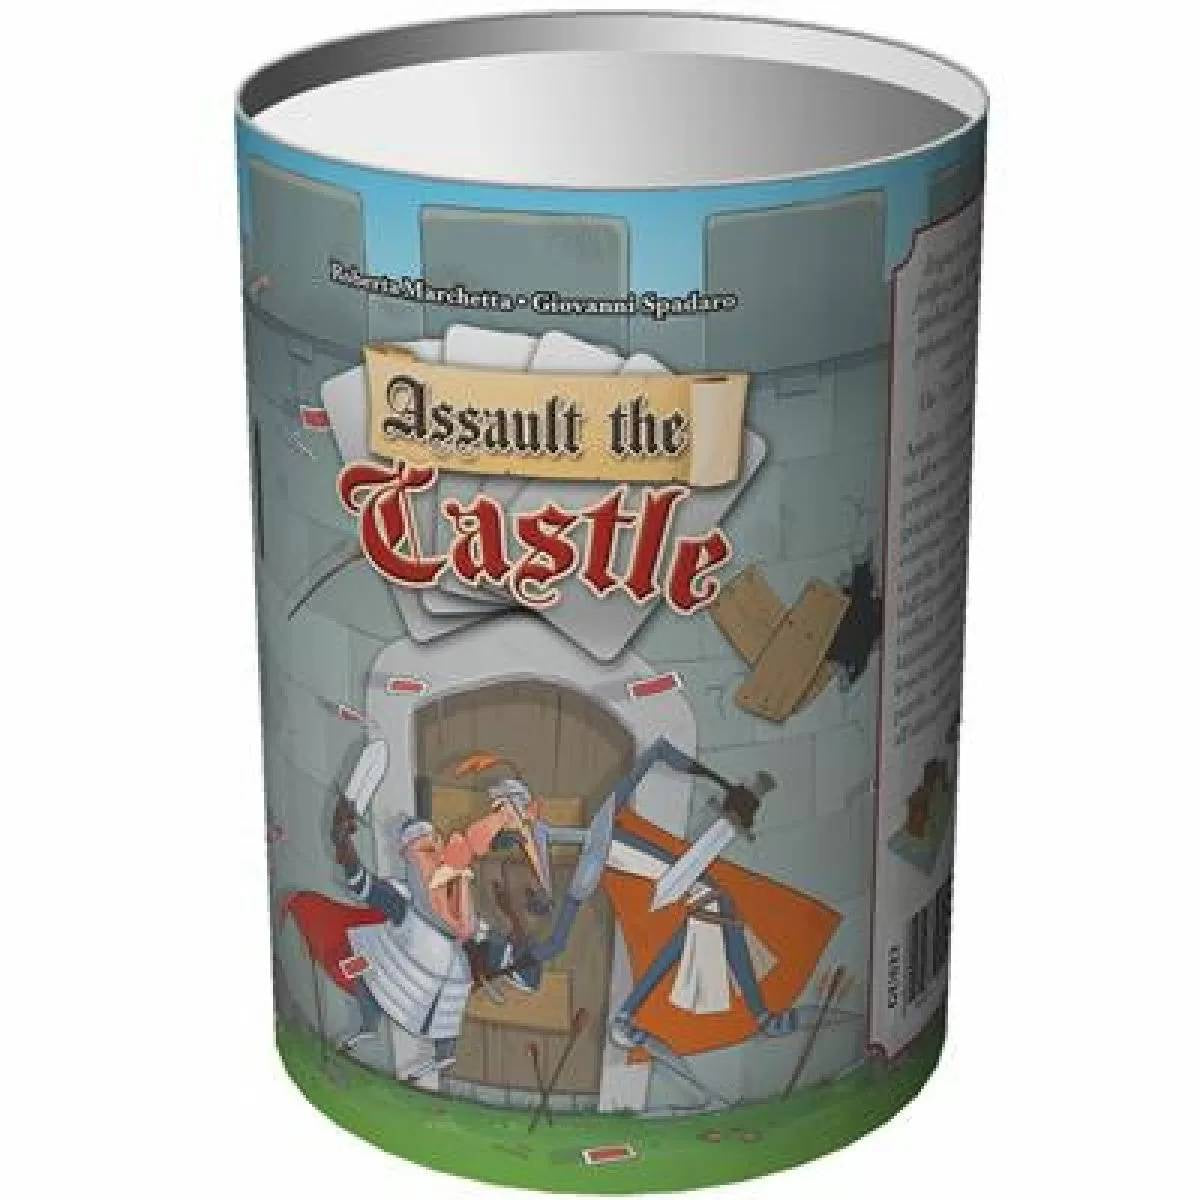 Assault the Castle